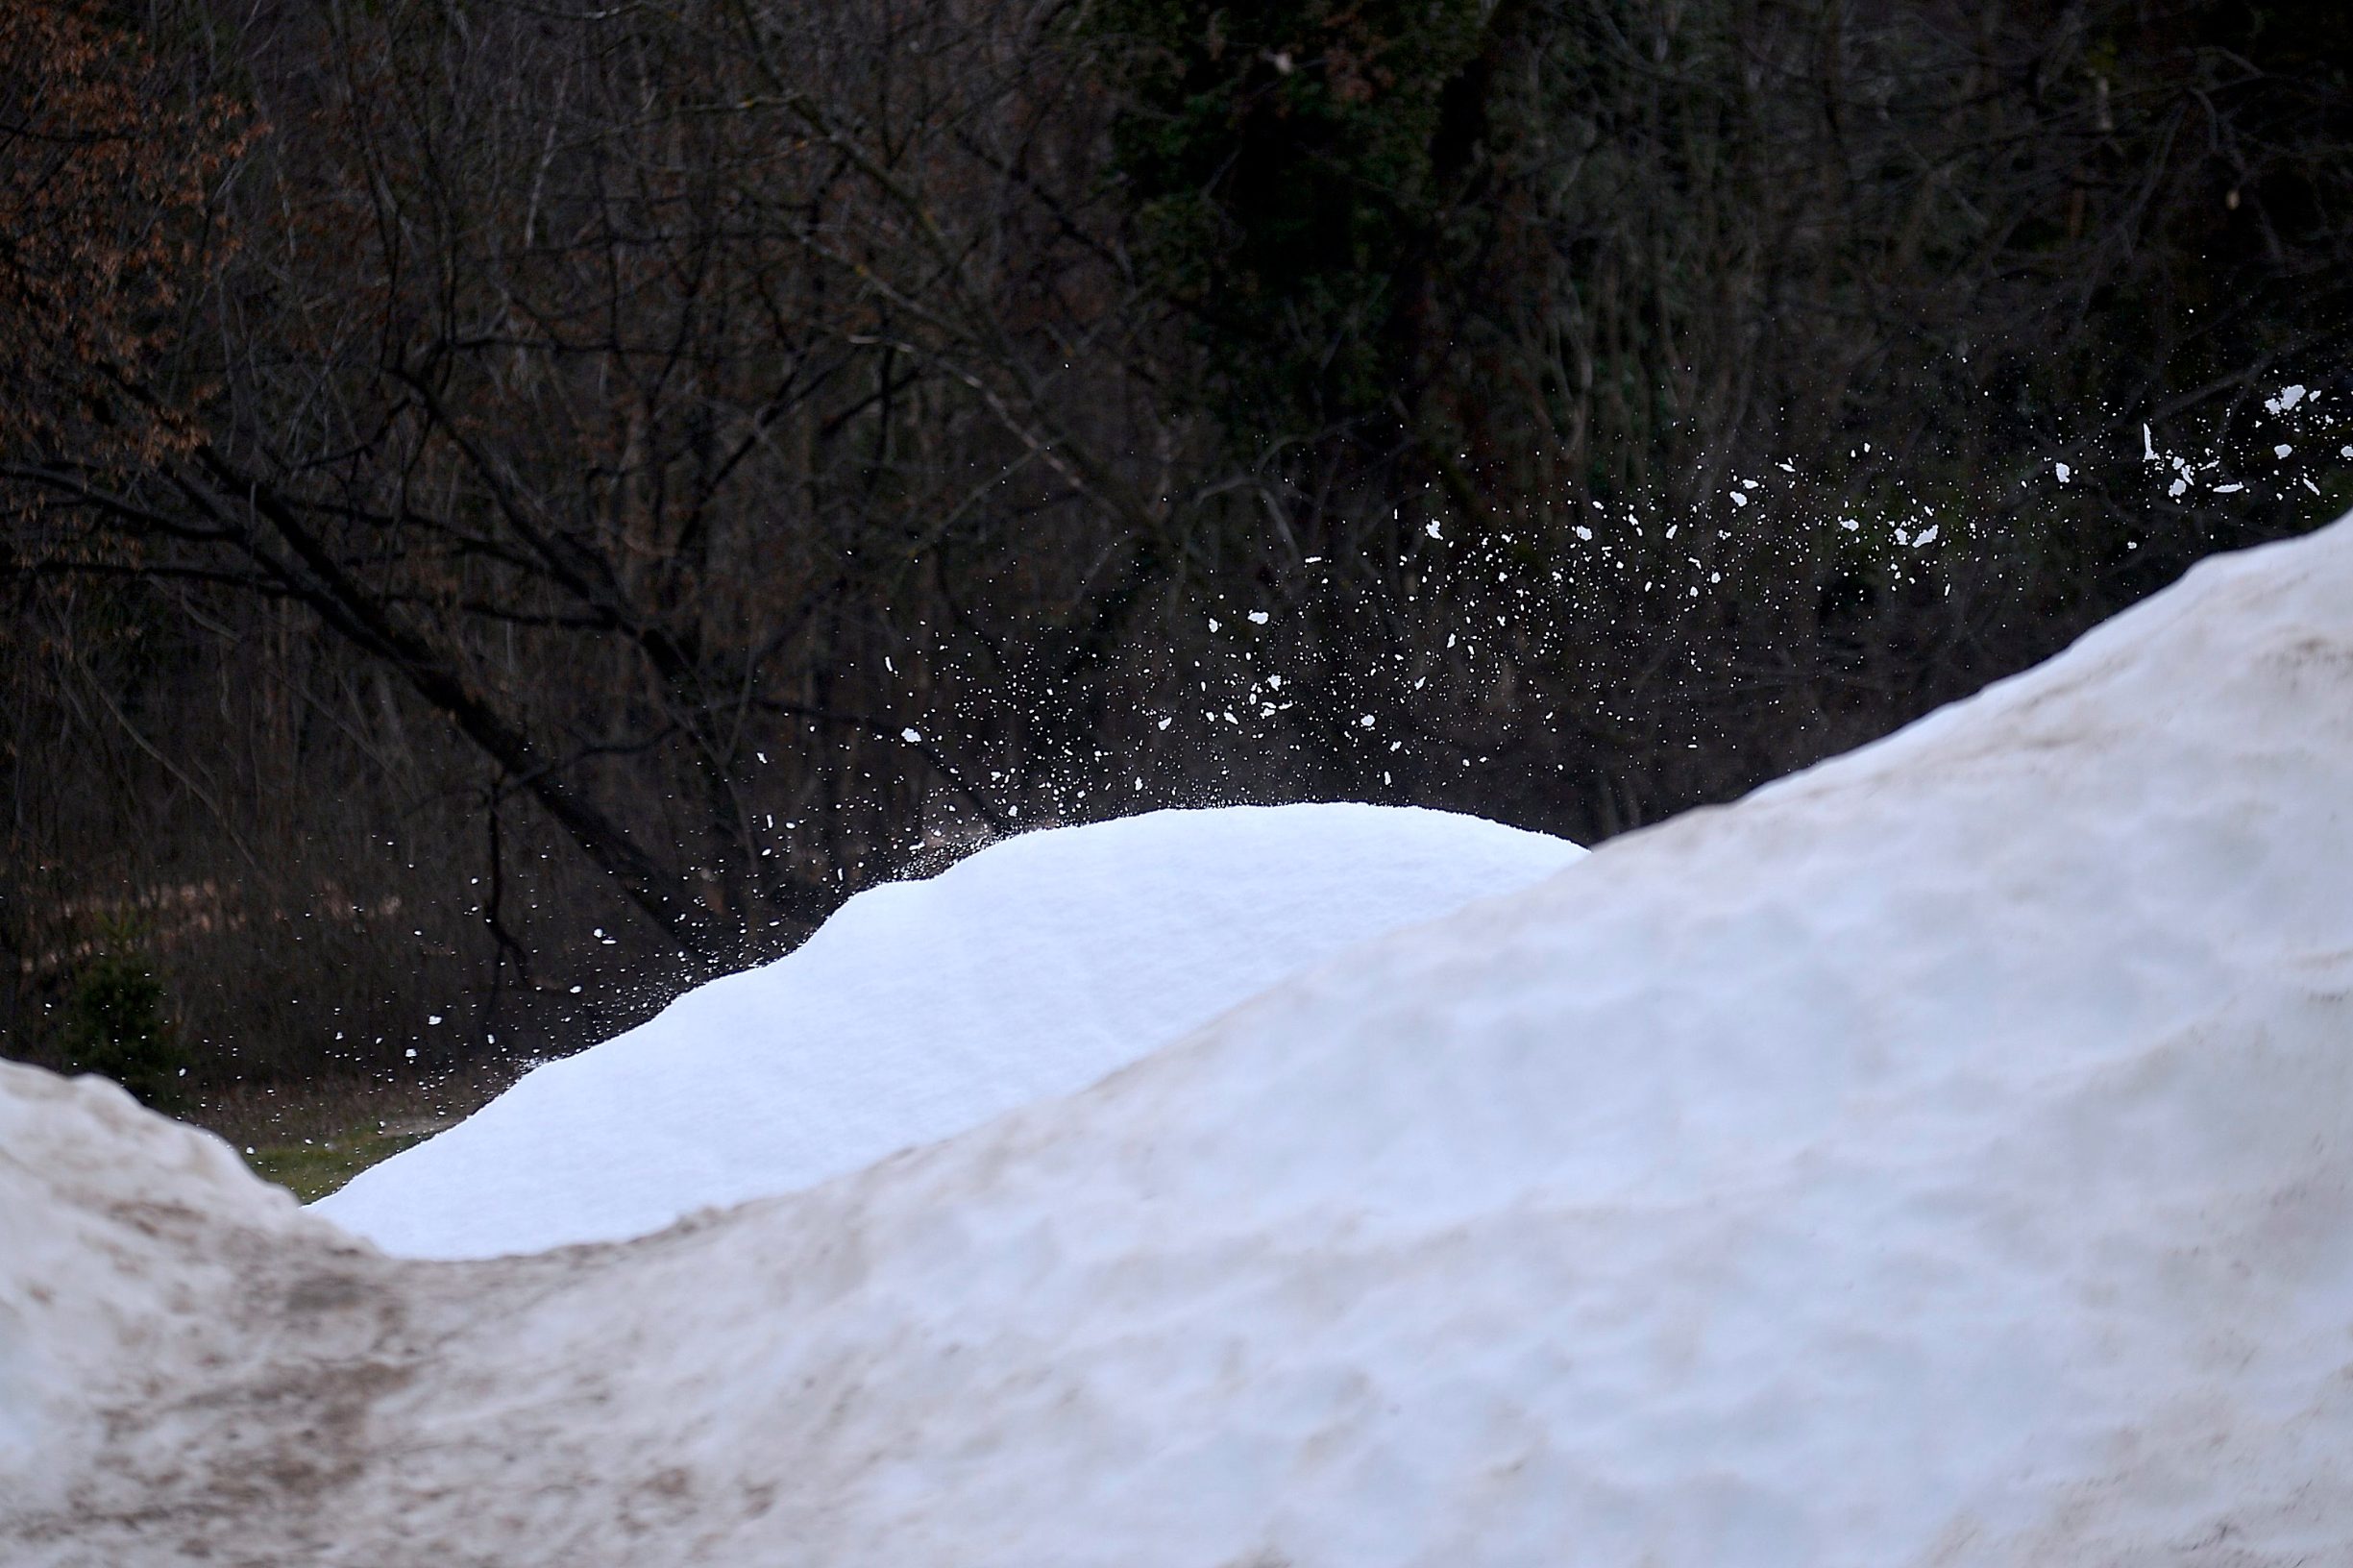 Zagreb, 020220. 
Cmrok.
Strojevi za snijeg rade iako je temperatura zraka u gradu oko 17C.
Foto: Damir Krajac / CROPIX

